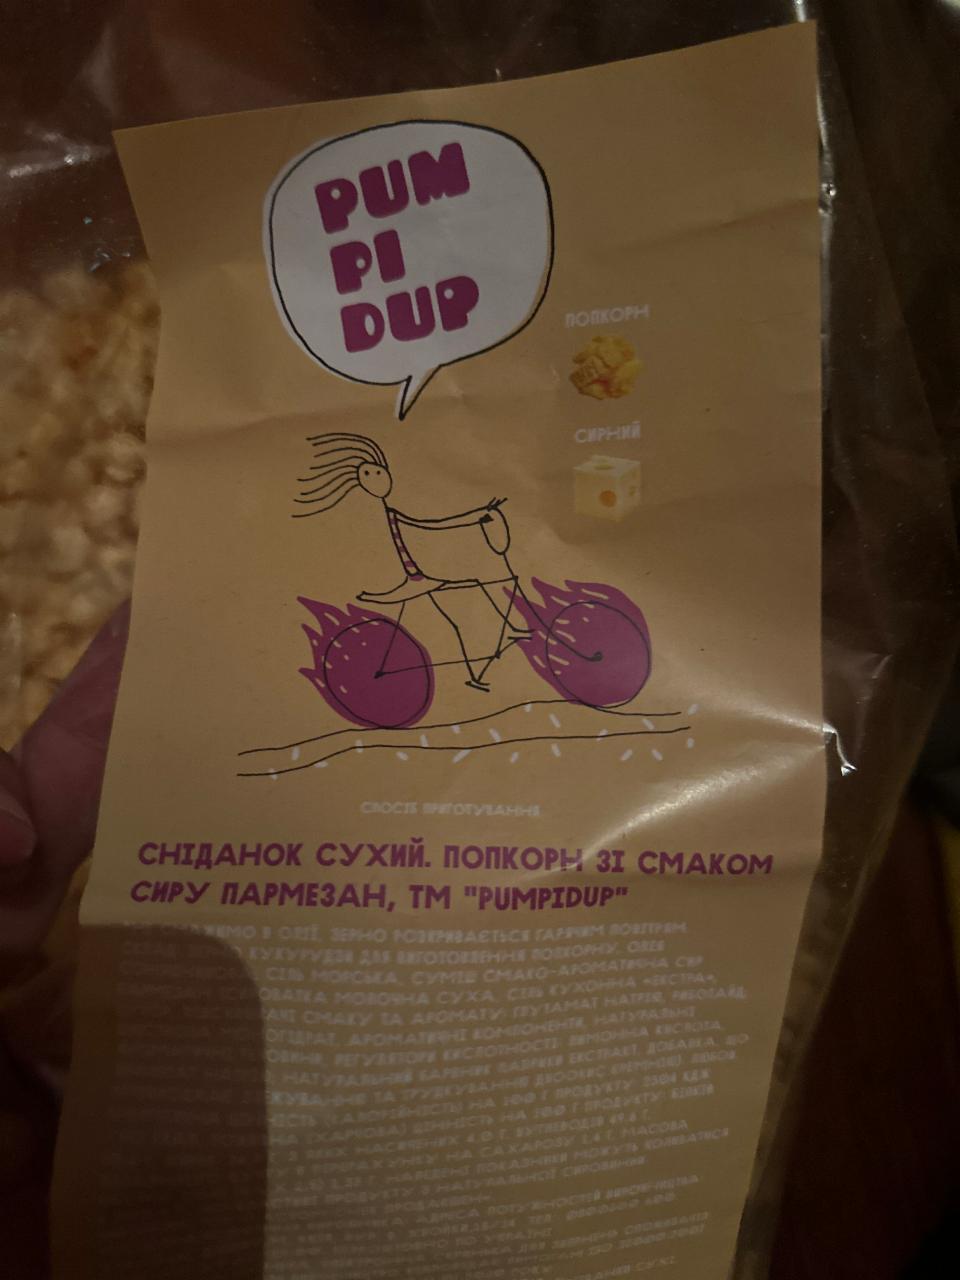 Фото - Попкорн со вкусом сыра пармезан Pumpidup